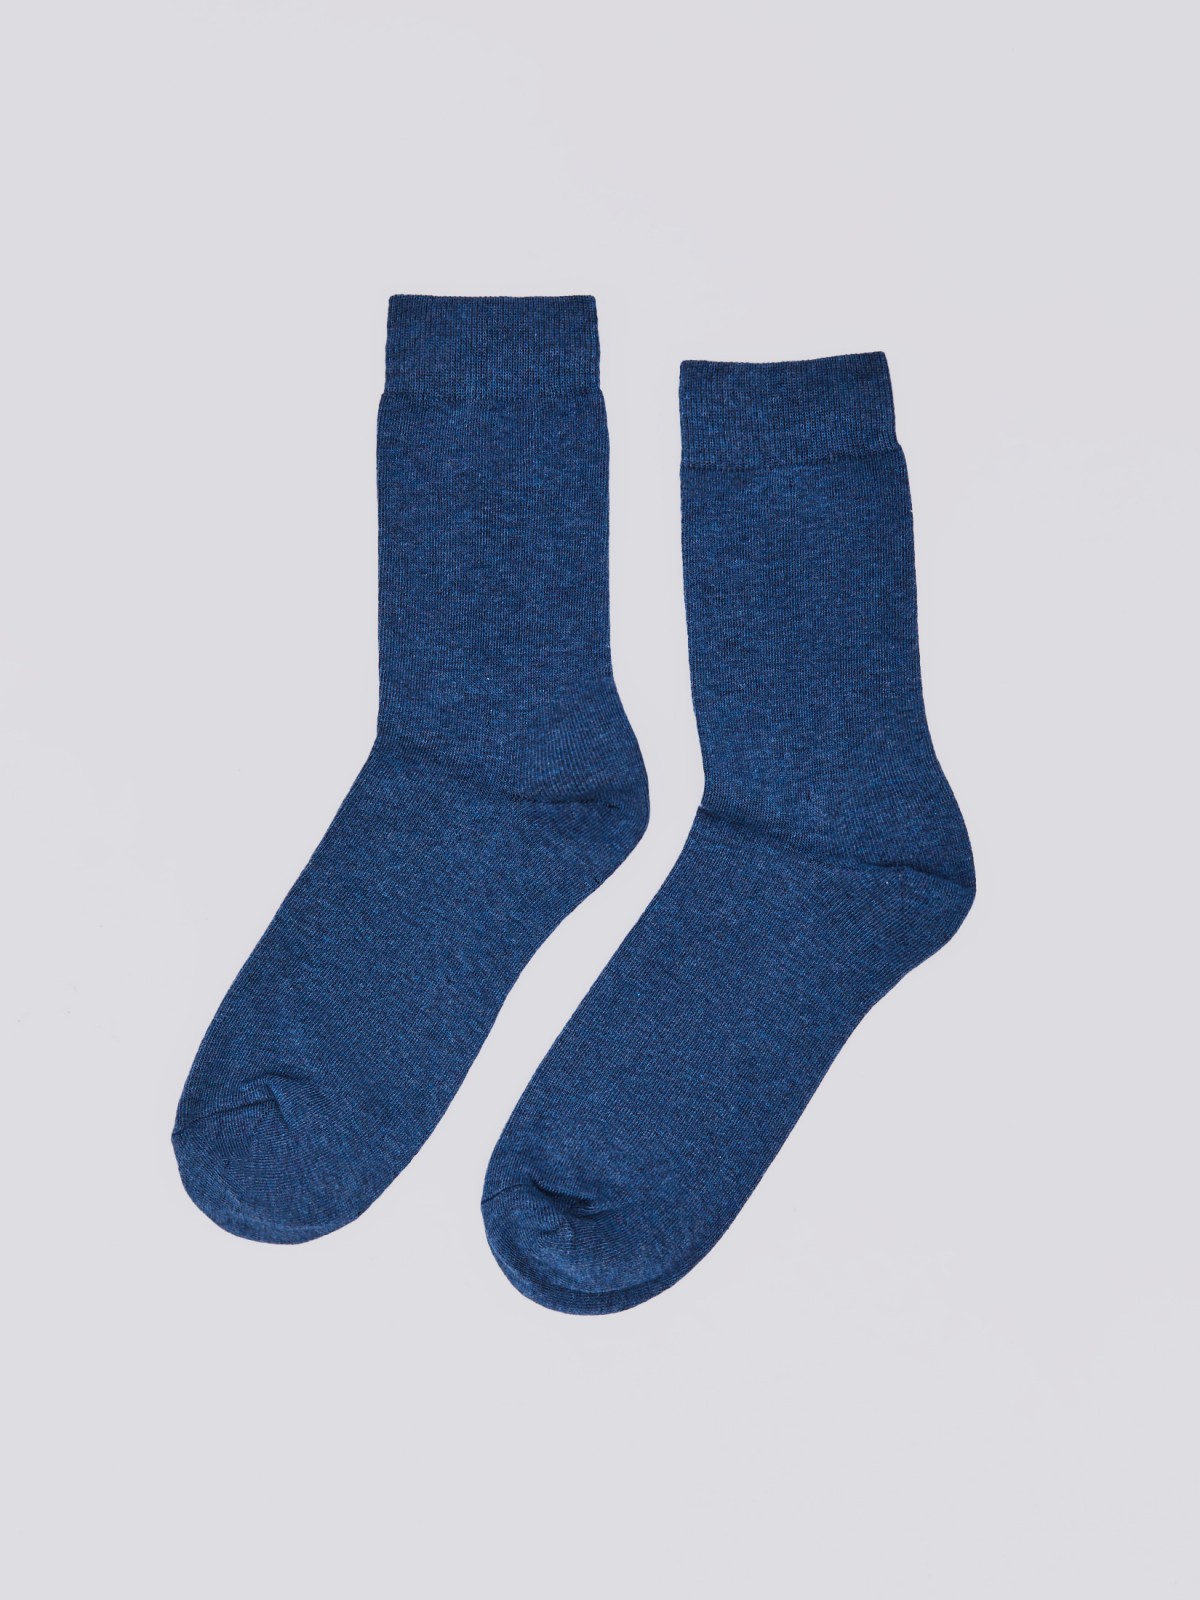 Набор носков (3 пары в комплекте) zolla 01411998J025, цвет темно-синий, размер 25-27 - фото 3